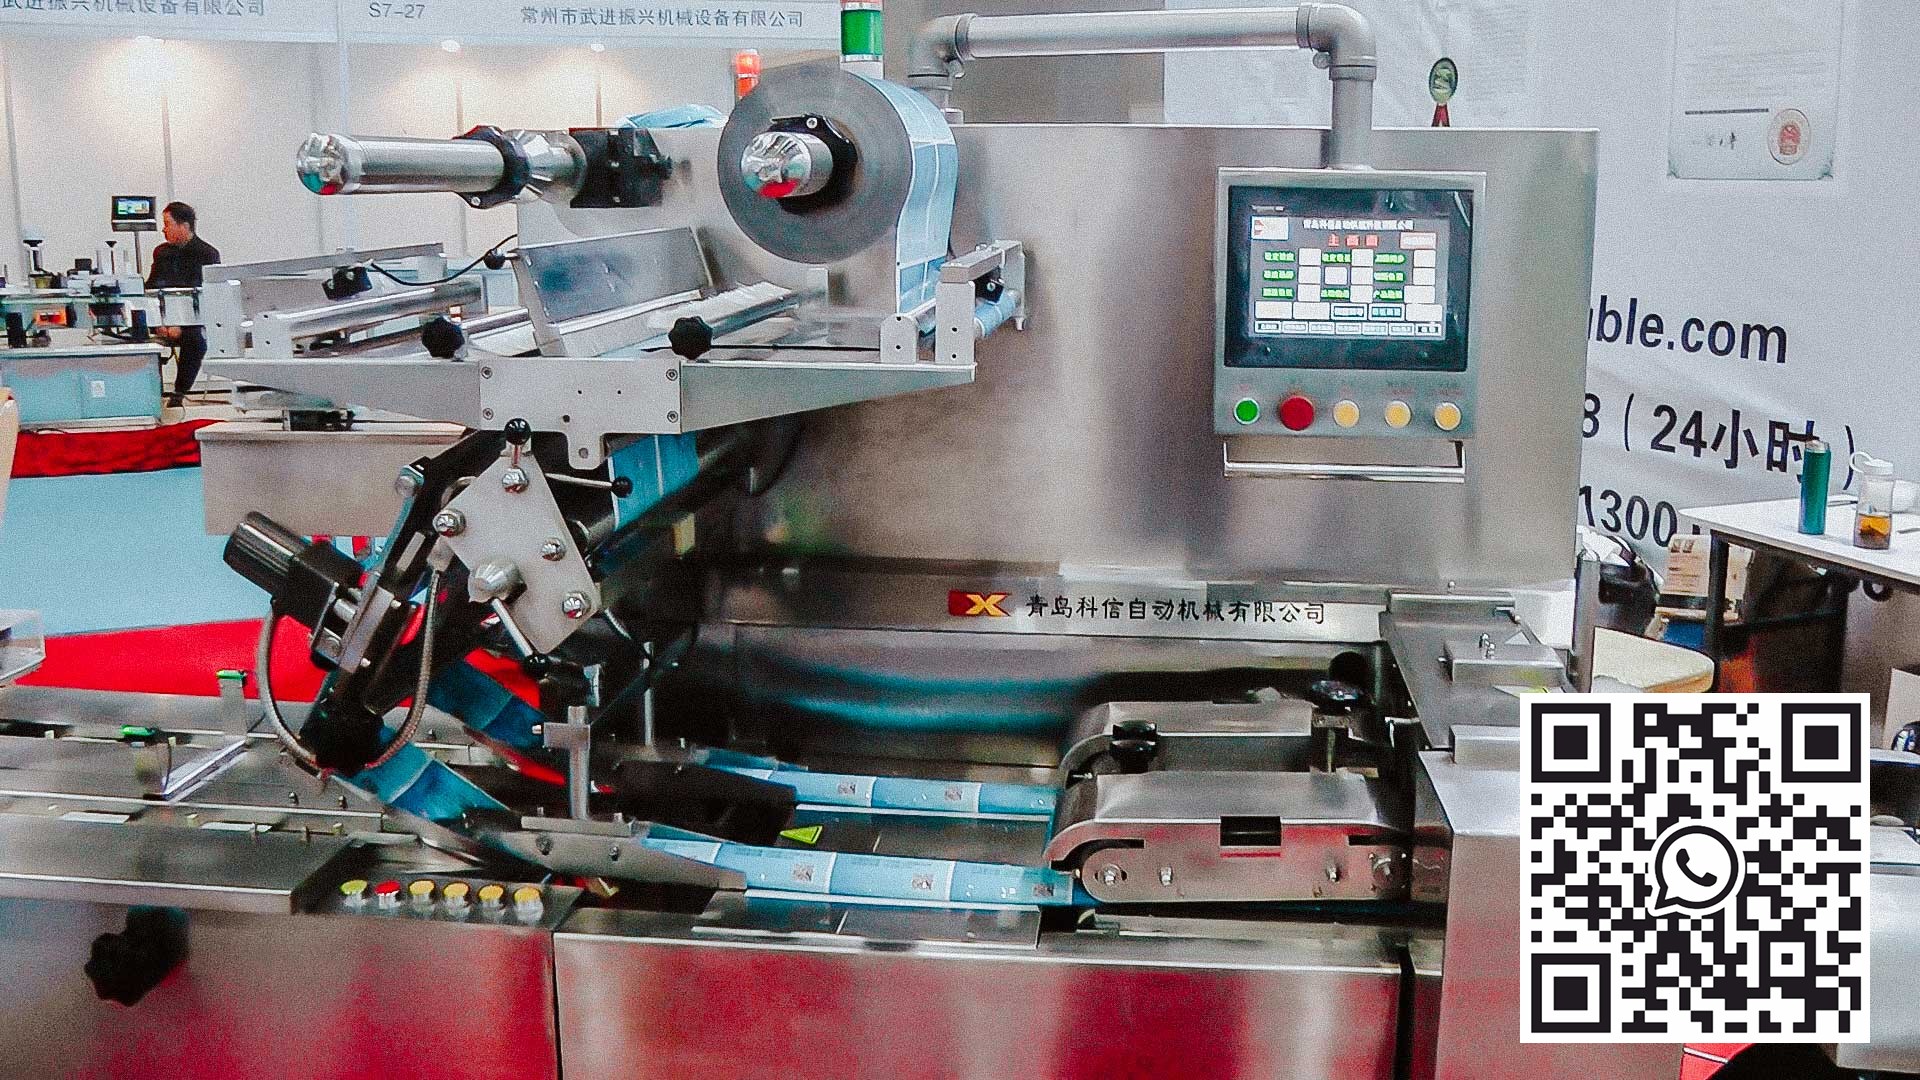 ماكينة كرتون أوتوماتيكية لتعبئة بثور PVC / ALU بالأقراص في الصناديق